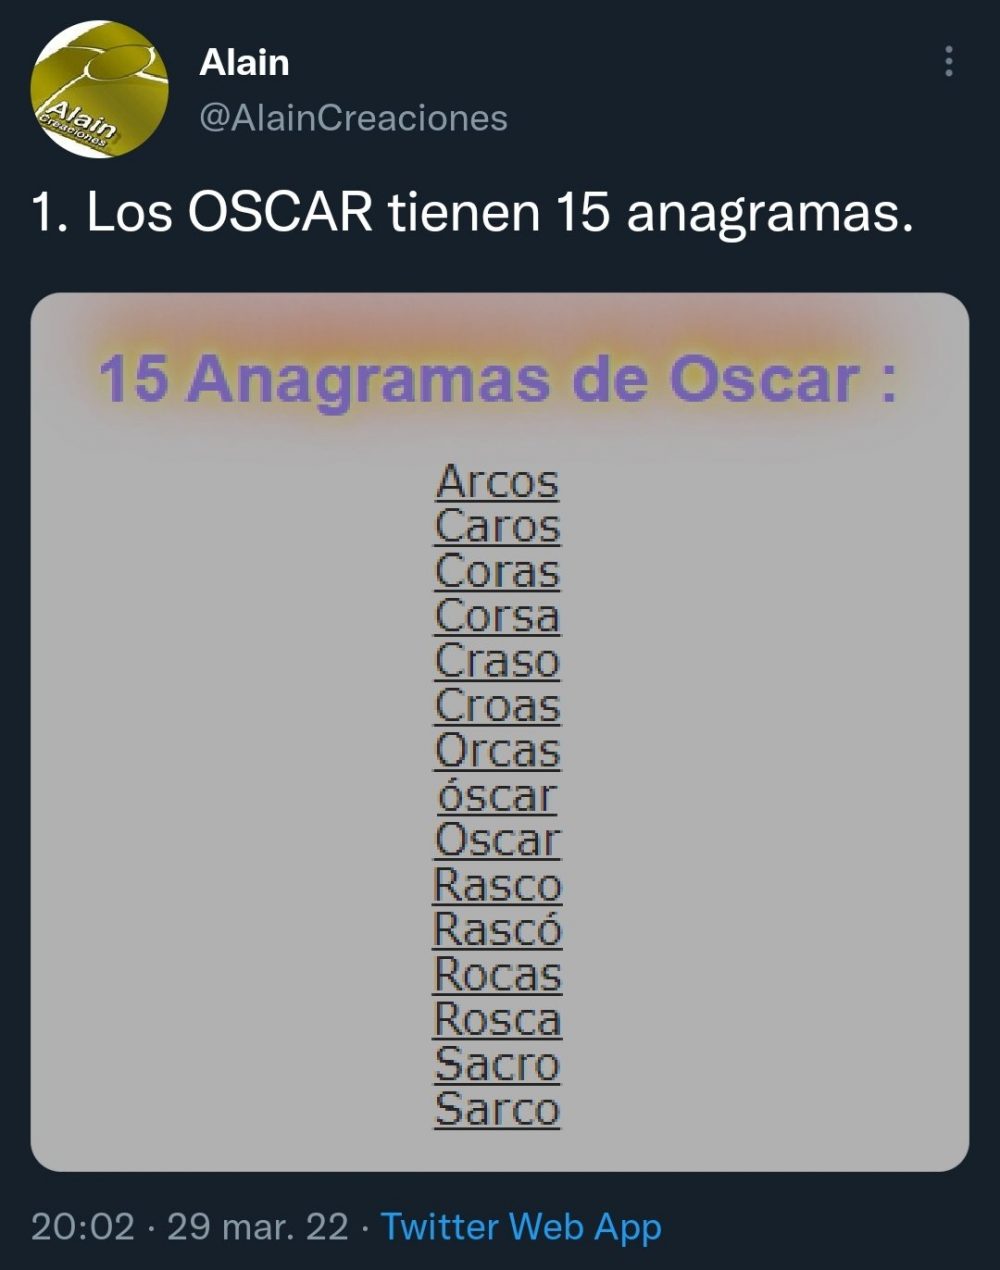 OSCAR tiene 15 anagramas, y eso significa que...